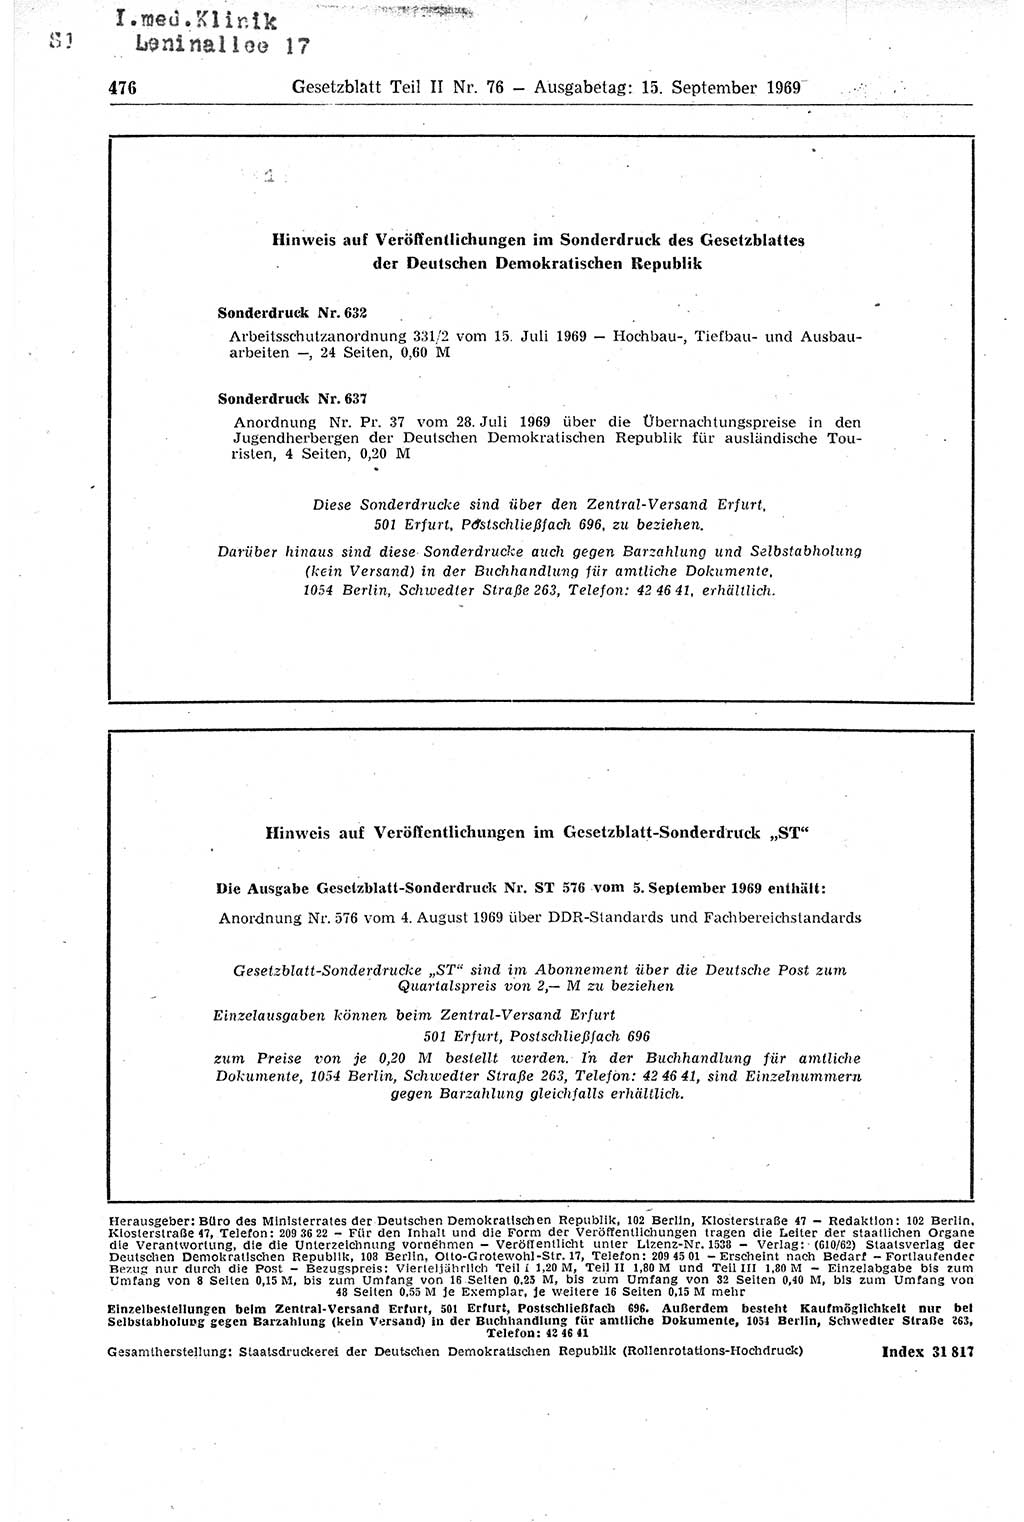 Gesetzblatt (GBl.) der Deutschen Demokratischen Republik (DDR) Teil ⅠⅠ 1969, Seite 476 (GBl. DDR ⅠⅠ 1969, S. 476)